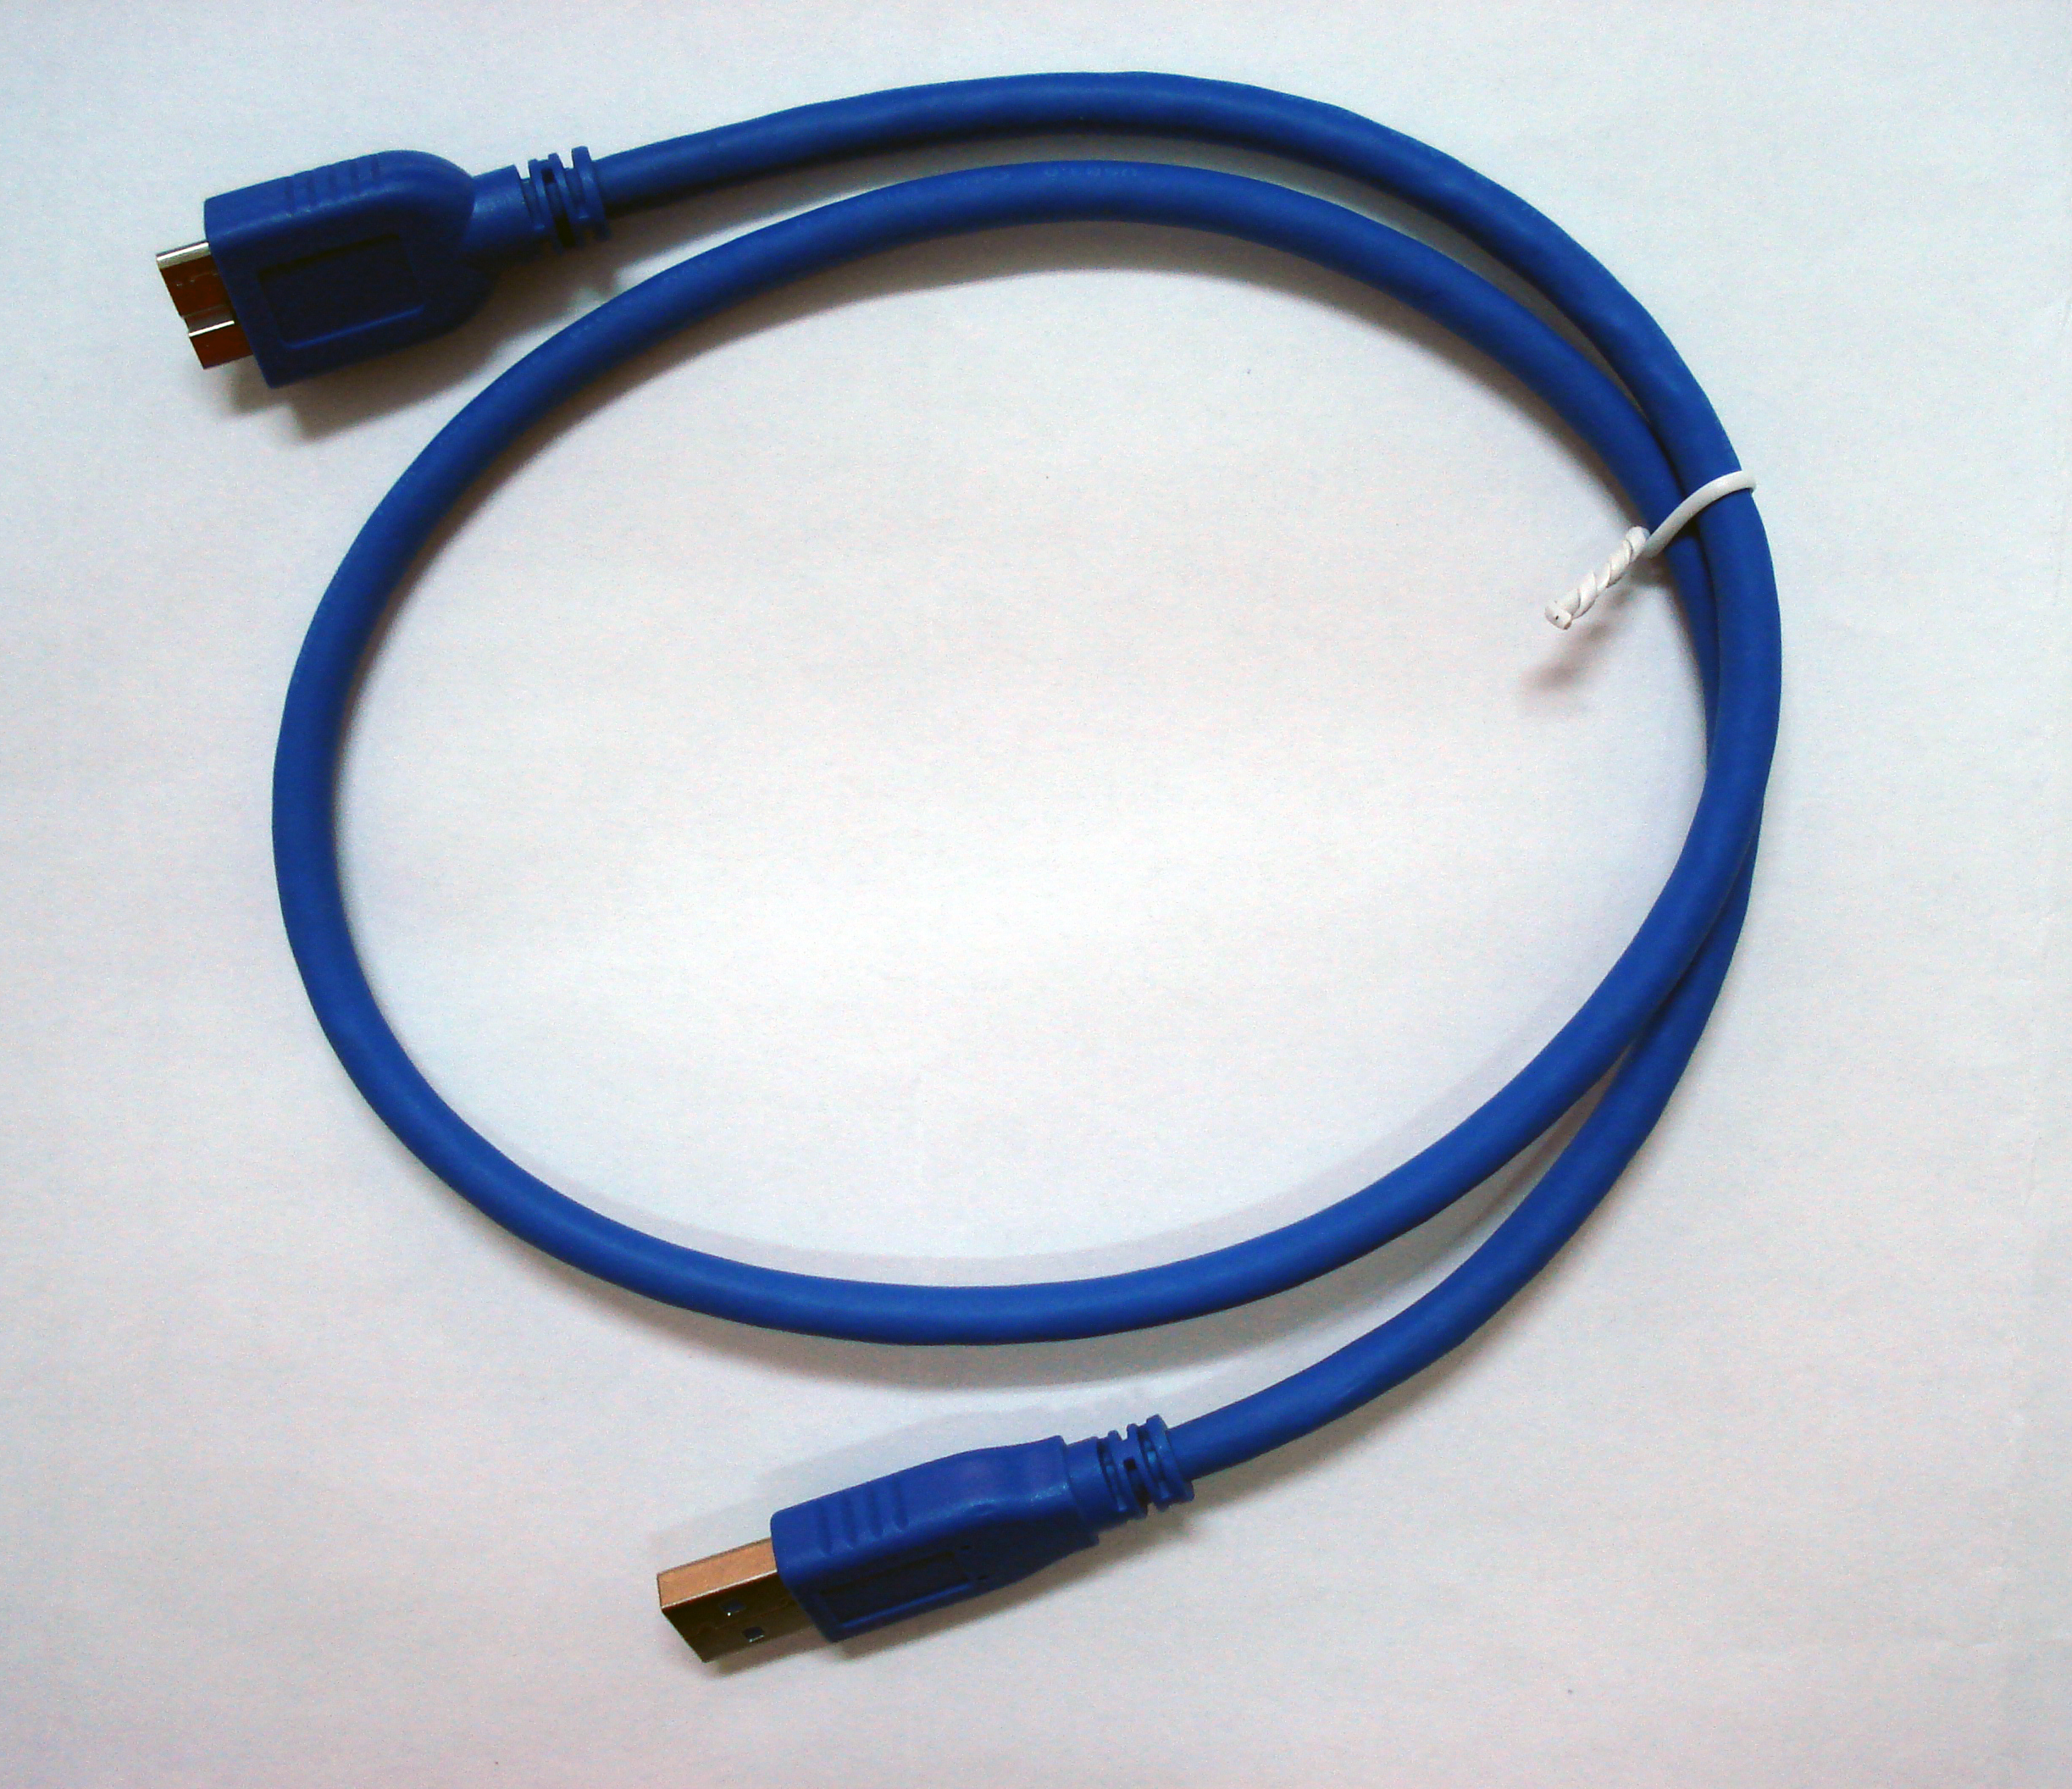 USB 3.0 - USB cables